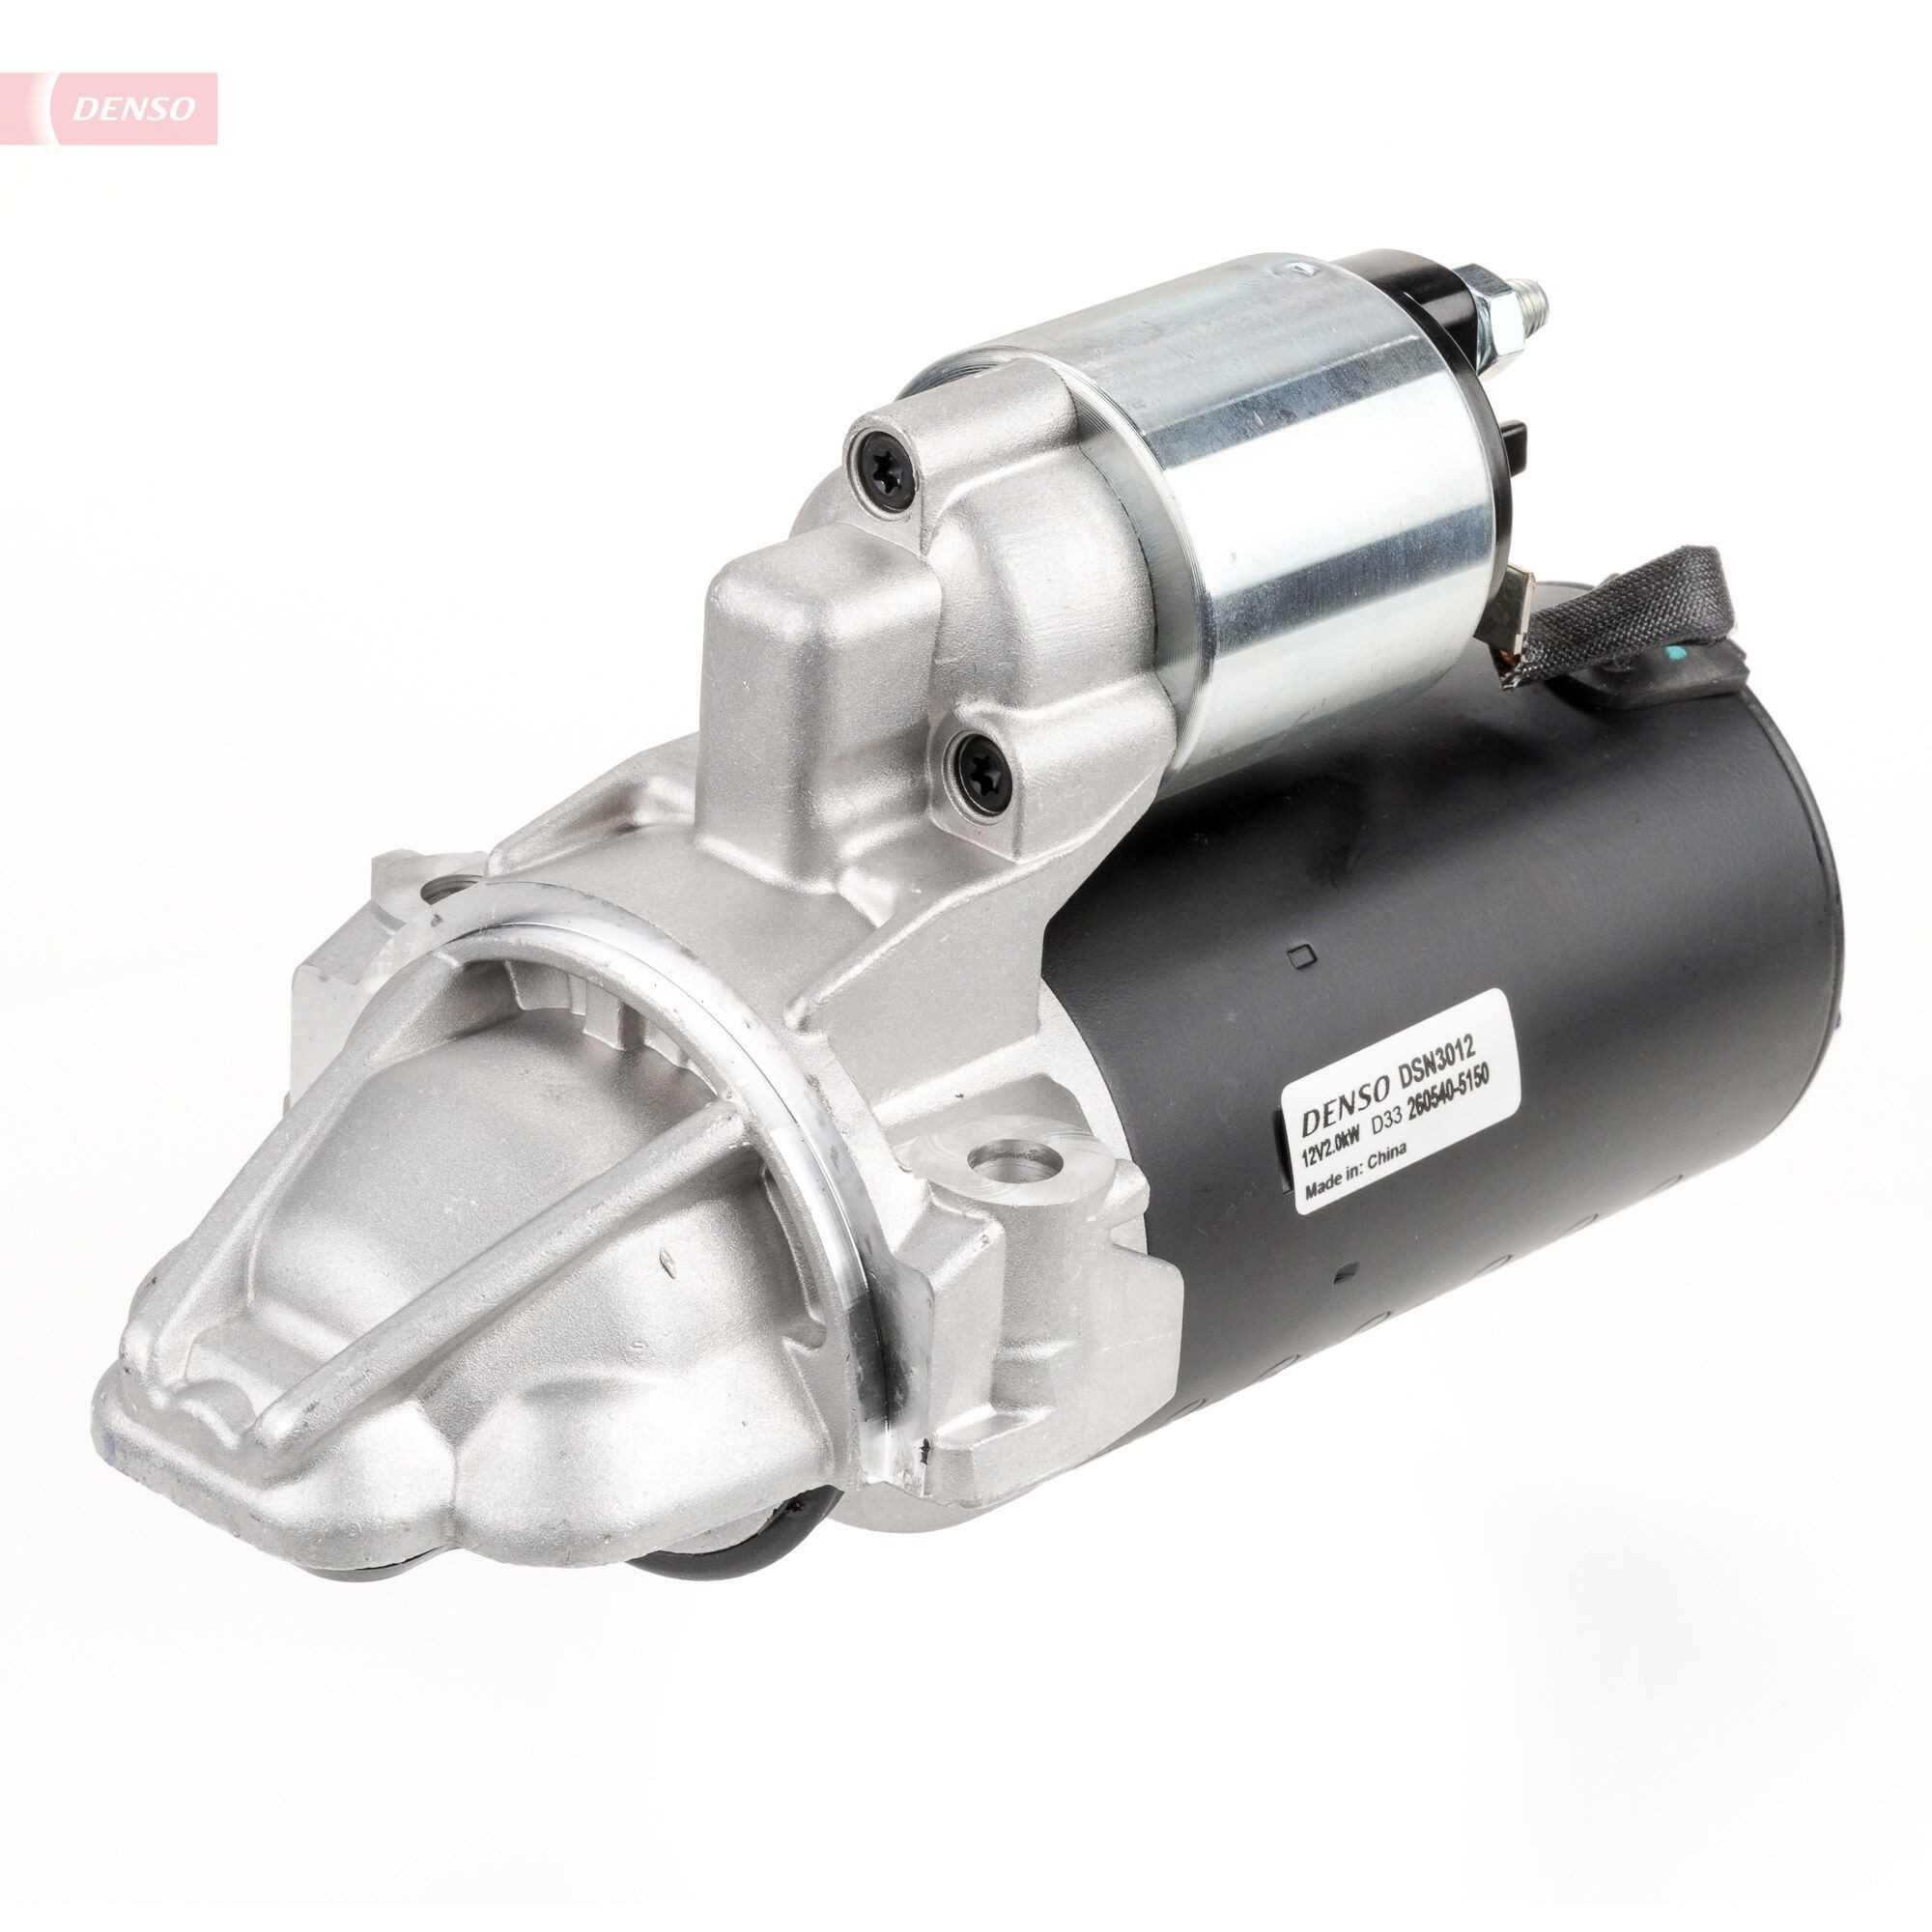 DENSO DSN3012 Starter motor 7H12-11002-AB